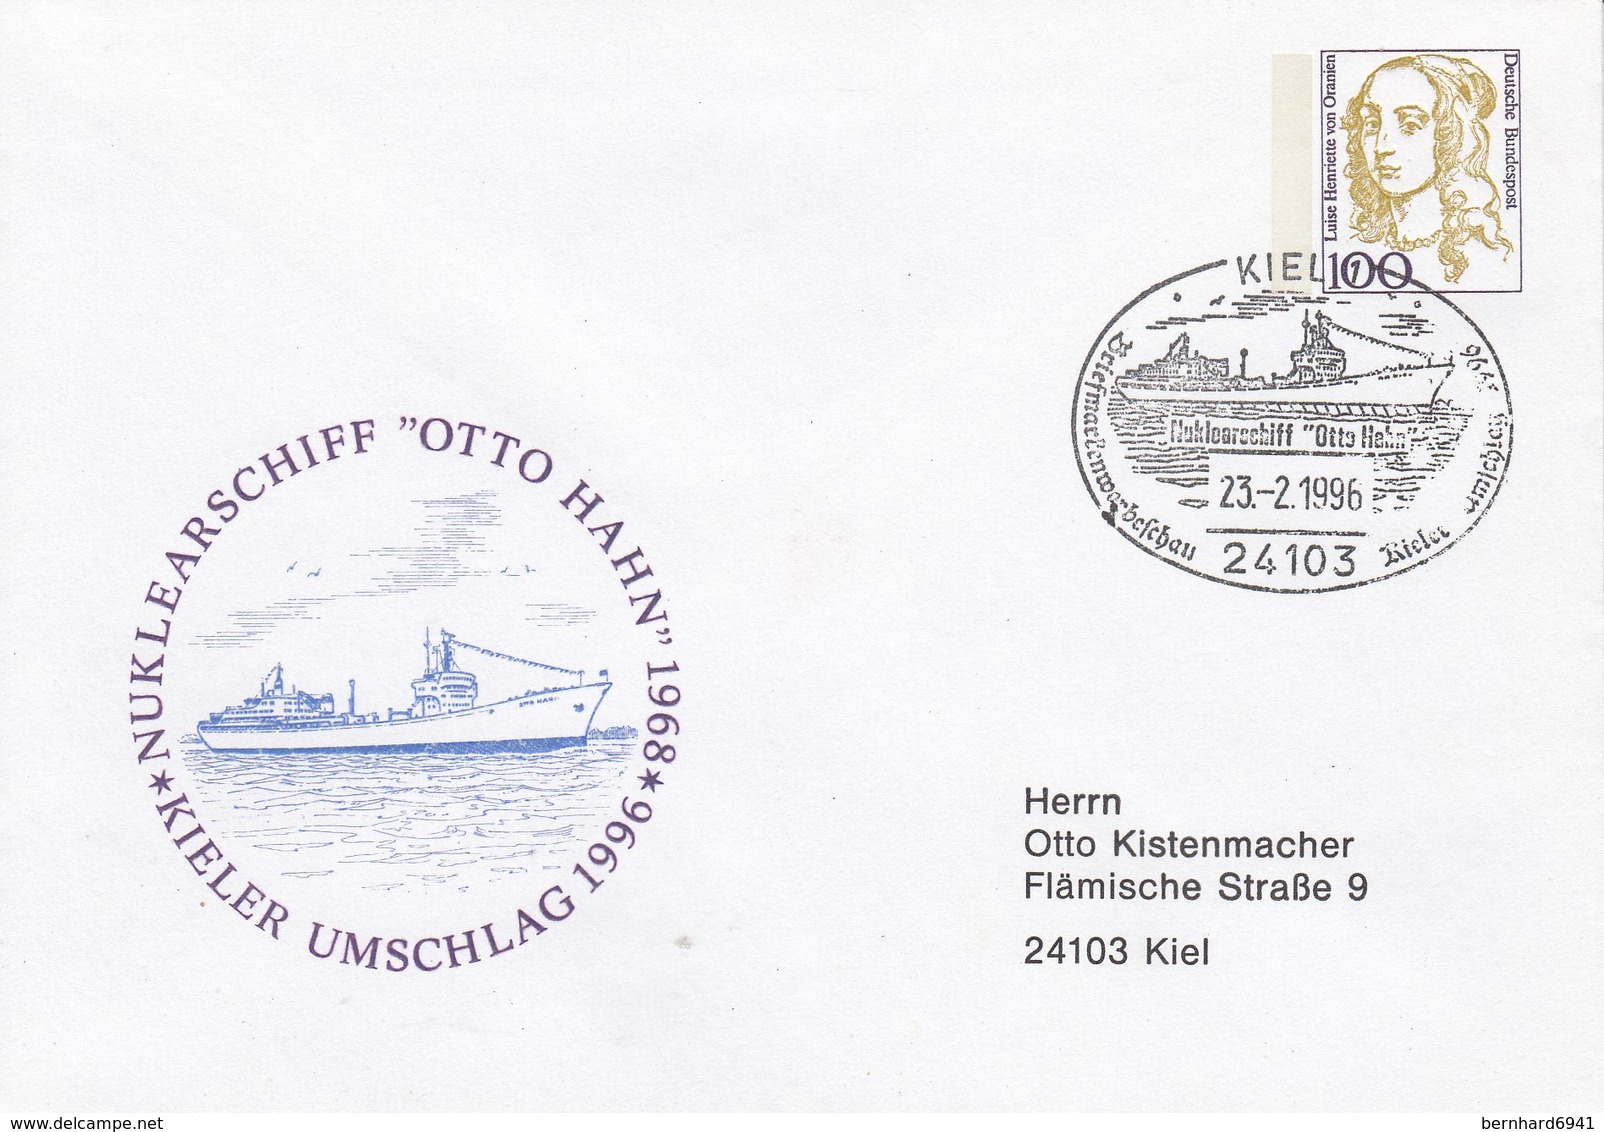 PU 350 C2/7b Nuklearschiff "Otto Hahn" 1968 - Kieler Umschlag 1996, Kiel 1 - Privatumschläge - Gebraucht